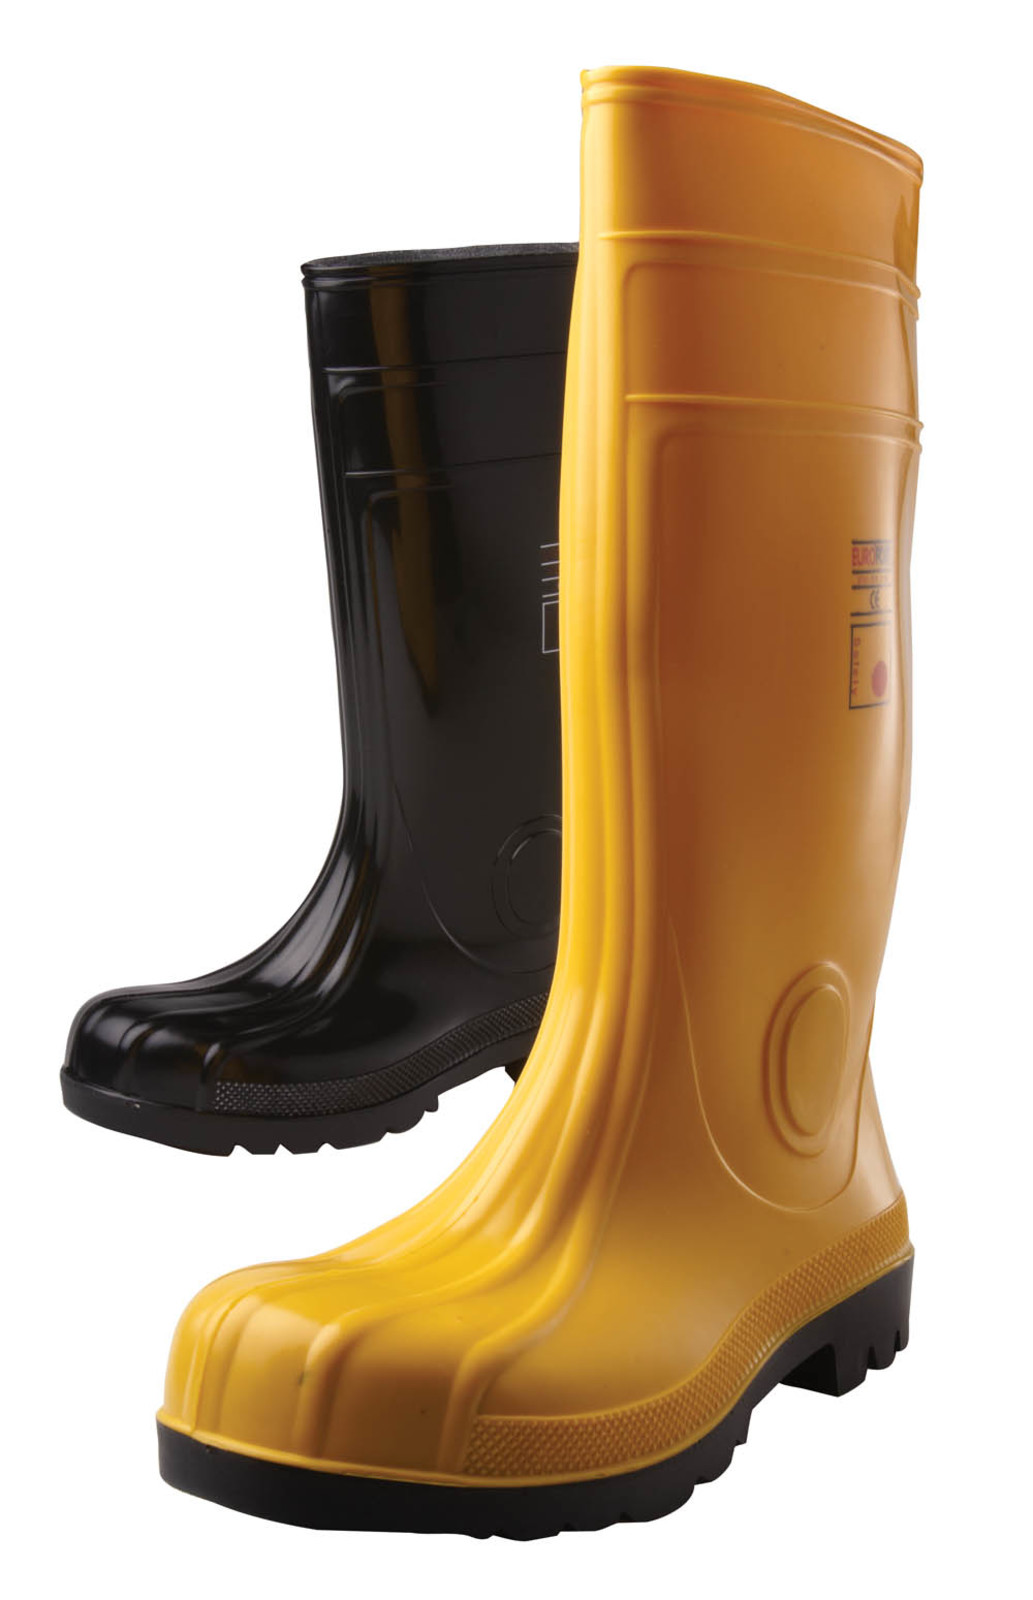 Gumáky Boots Eurofort  S5 - veľkosť: 41, farba: čierna